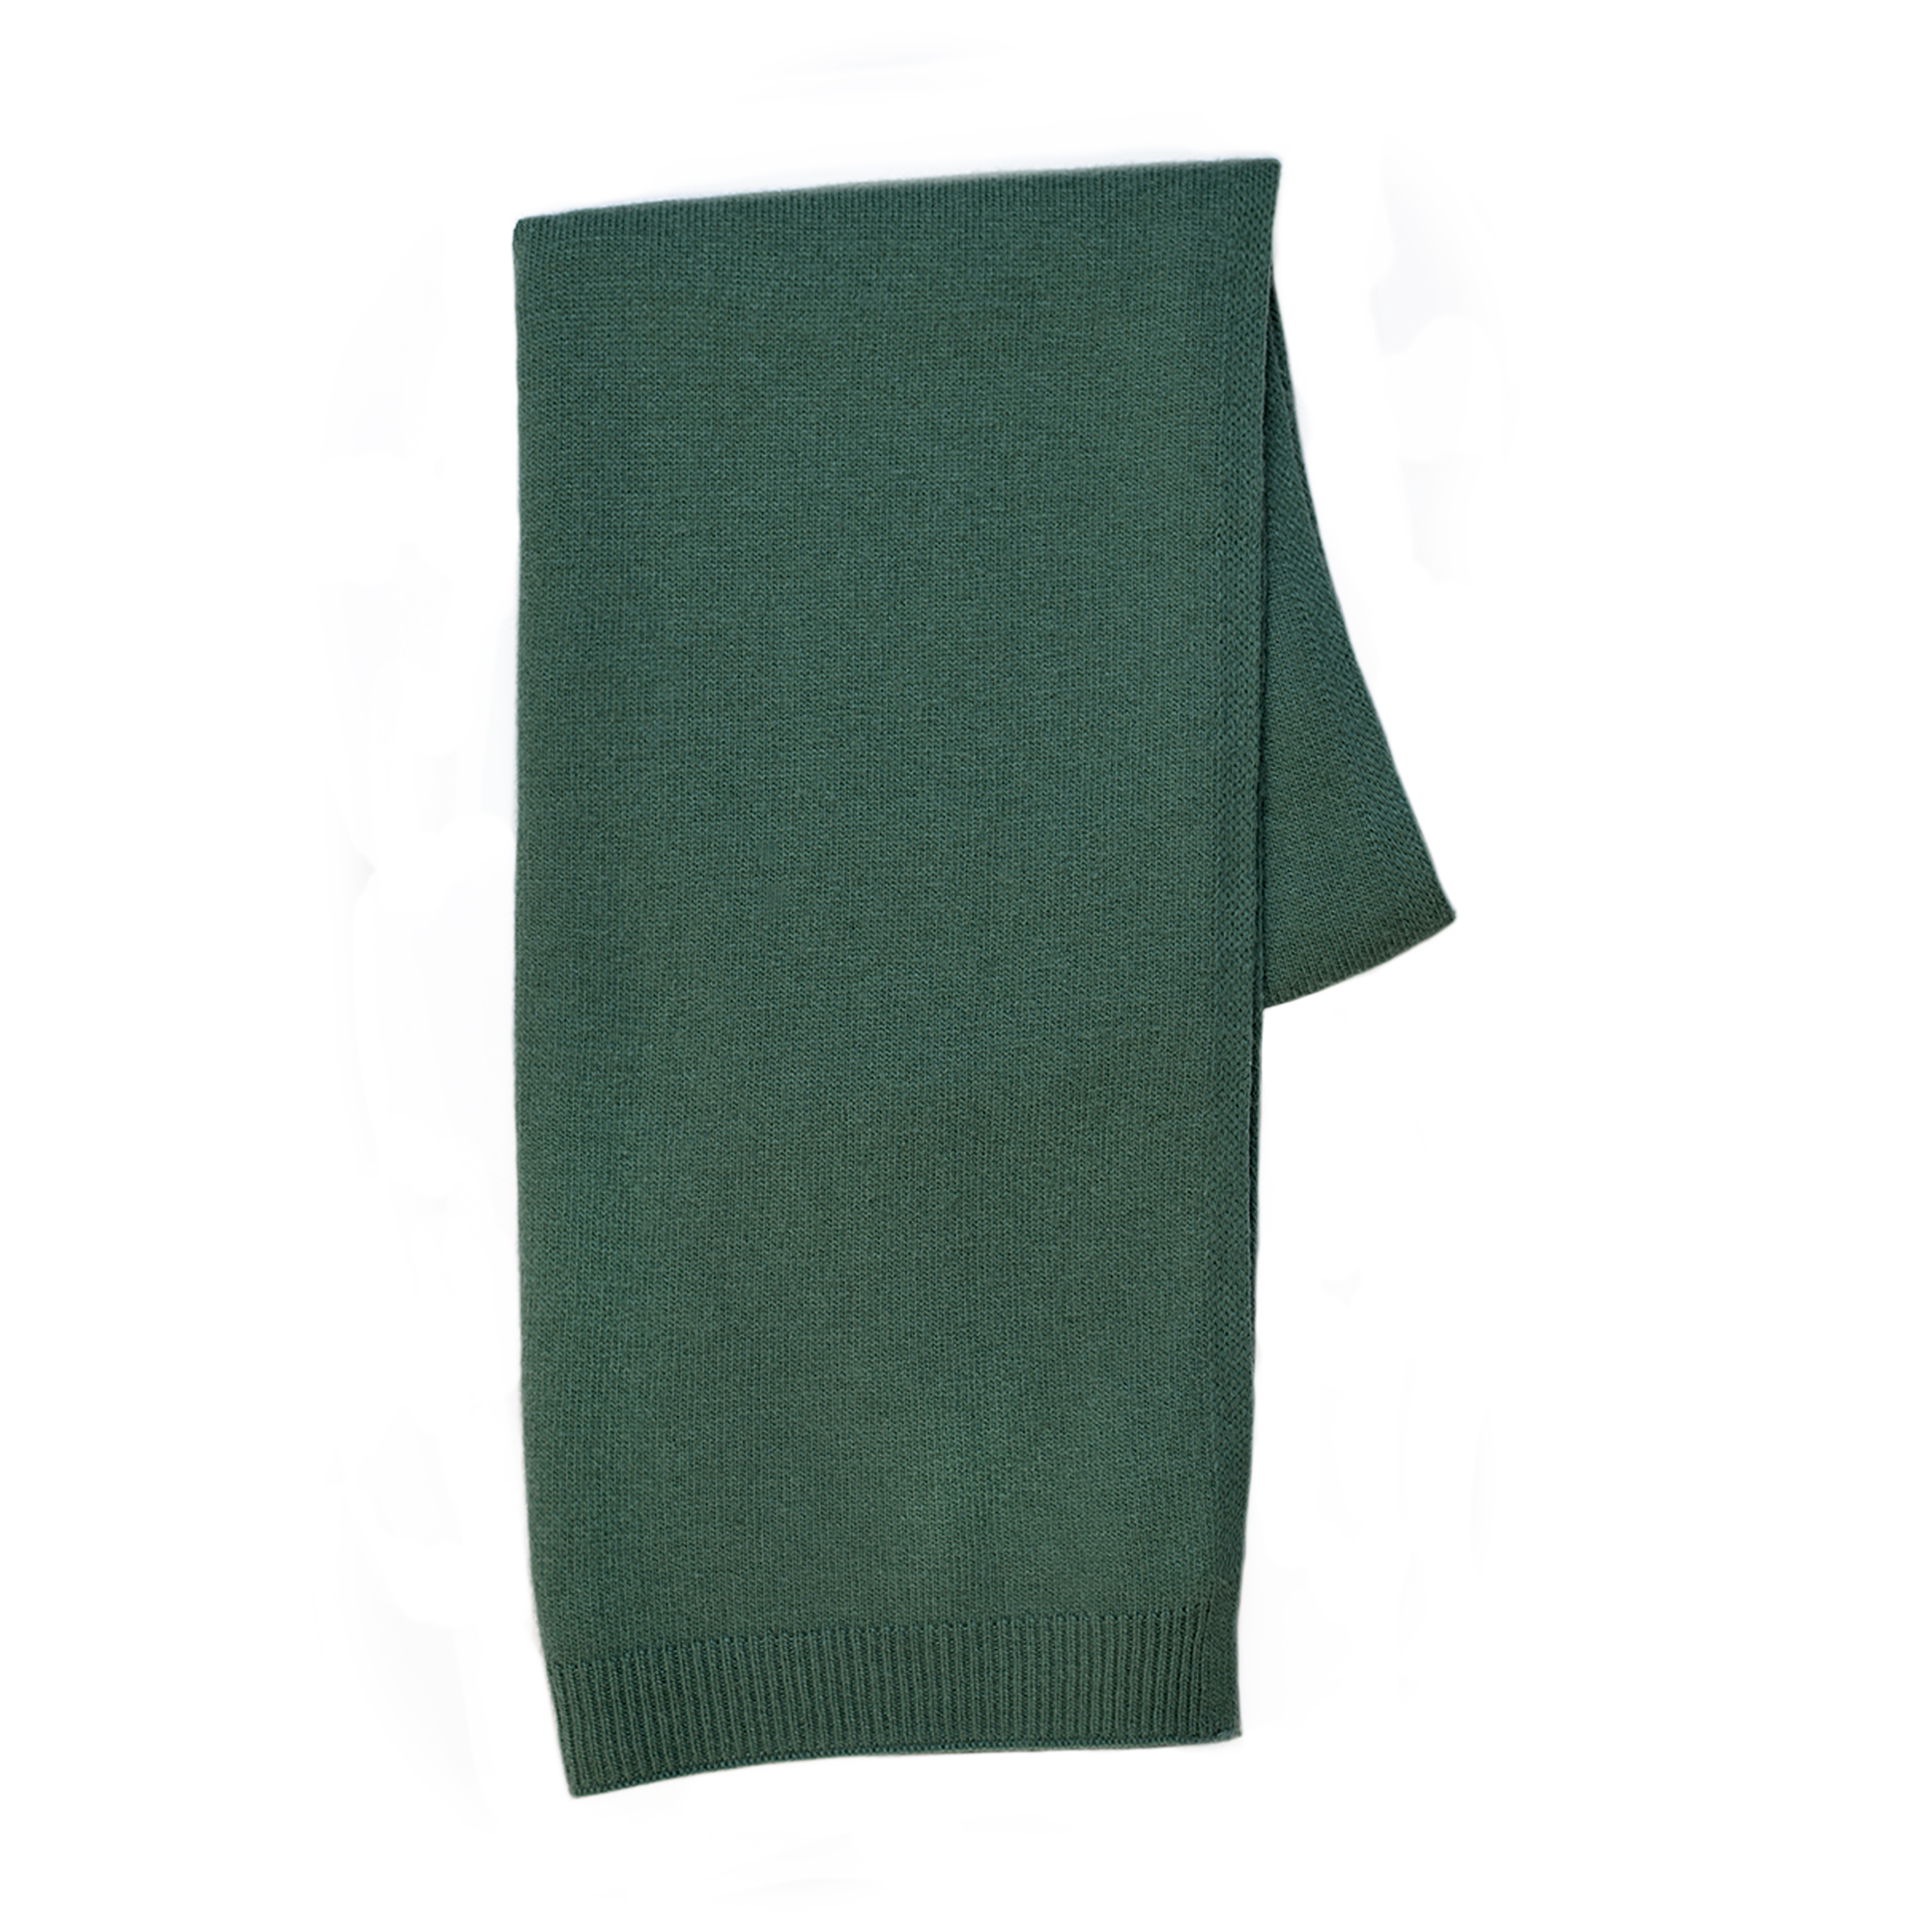 Шарф Thomas Munz 799-32R-0304, цвет зеленый, размер ONE SIZE